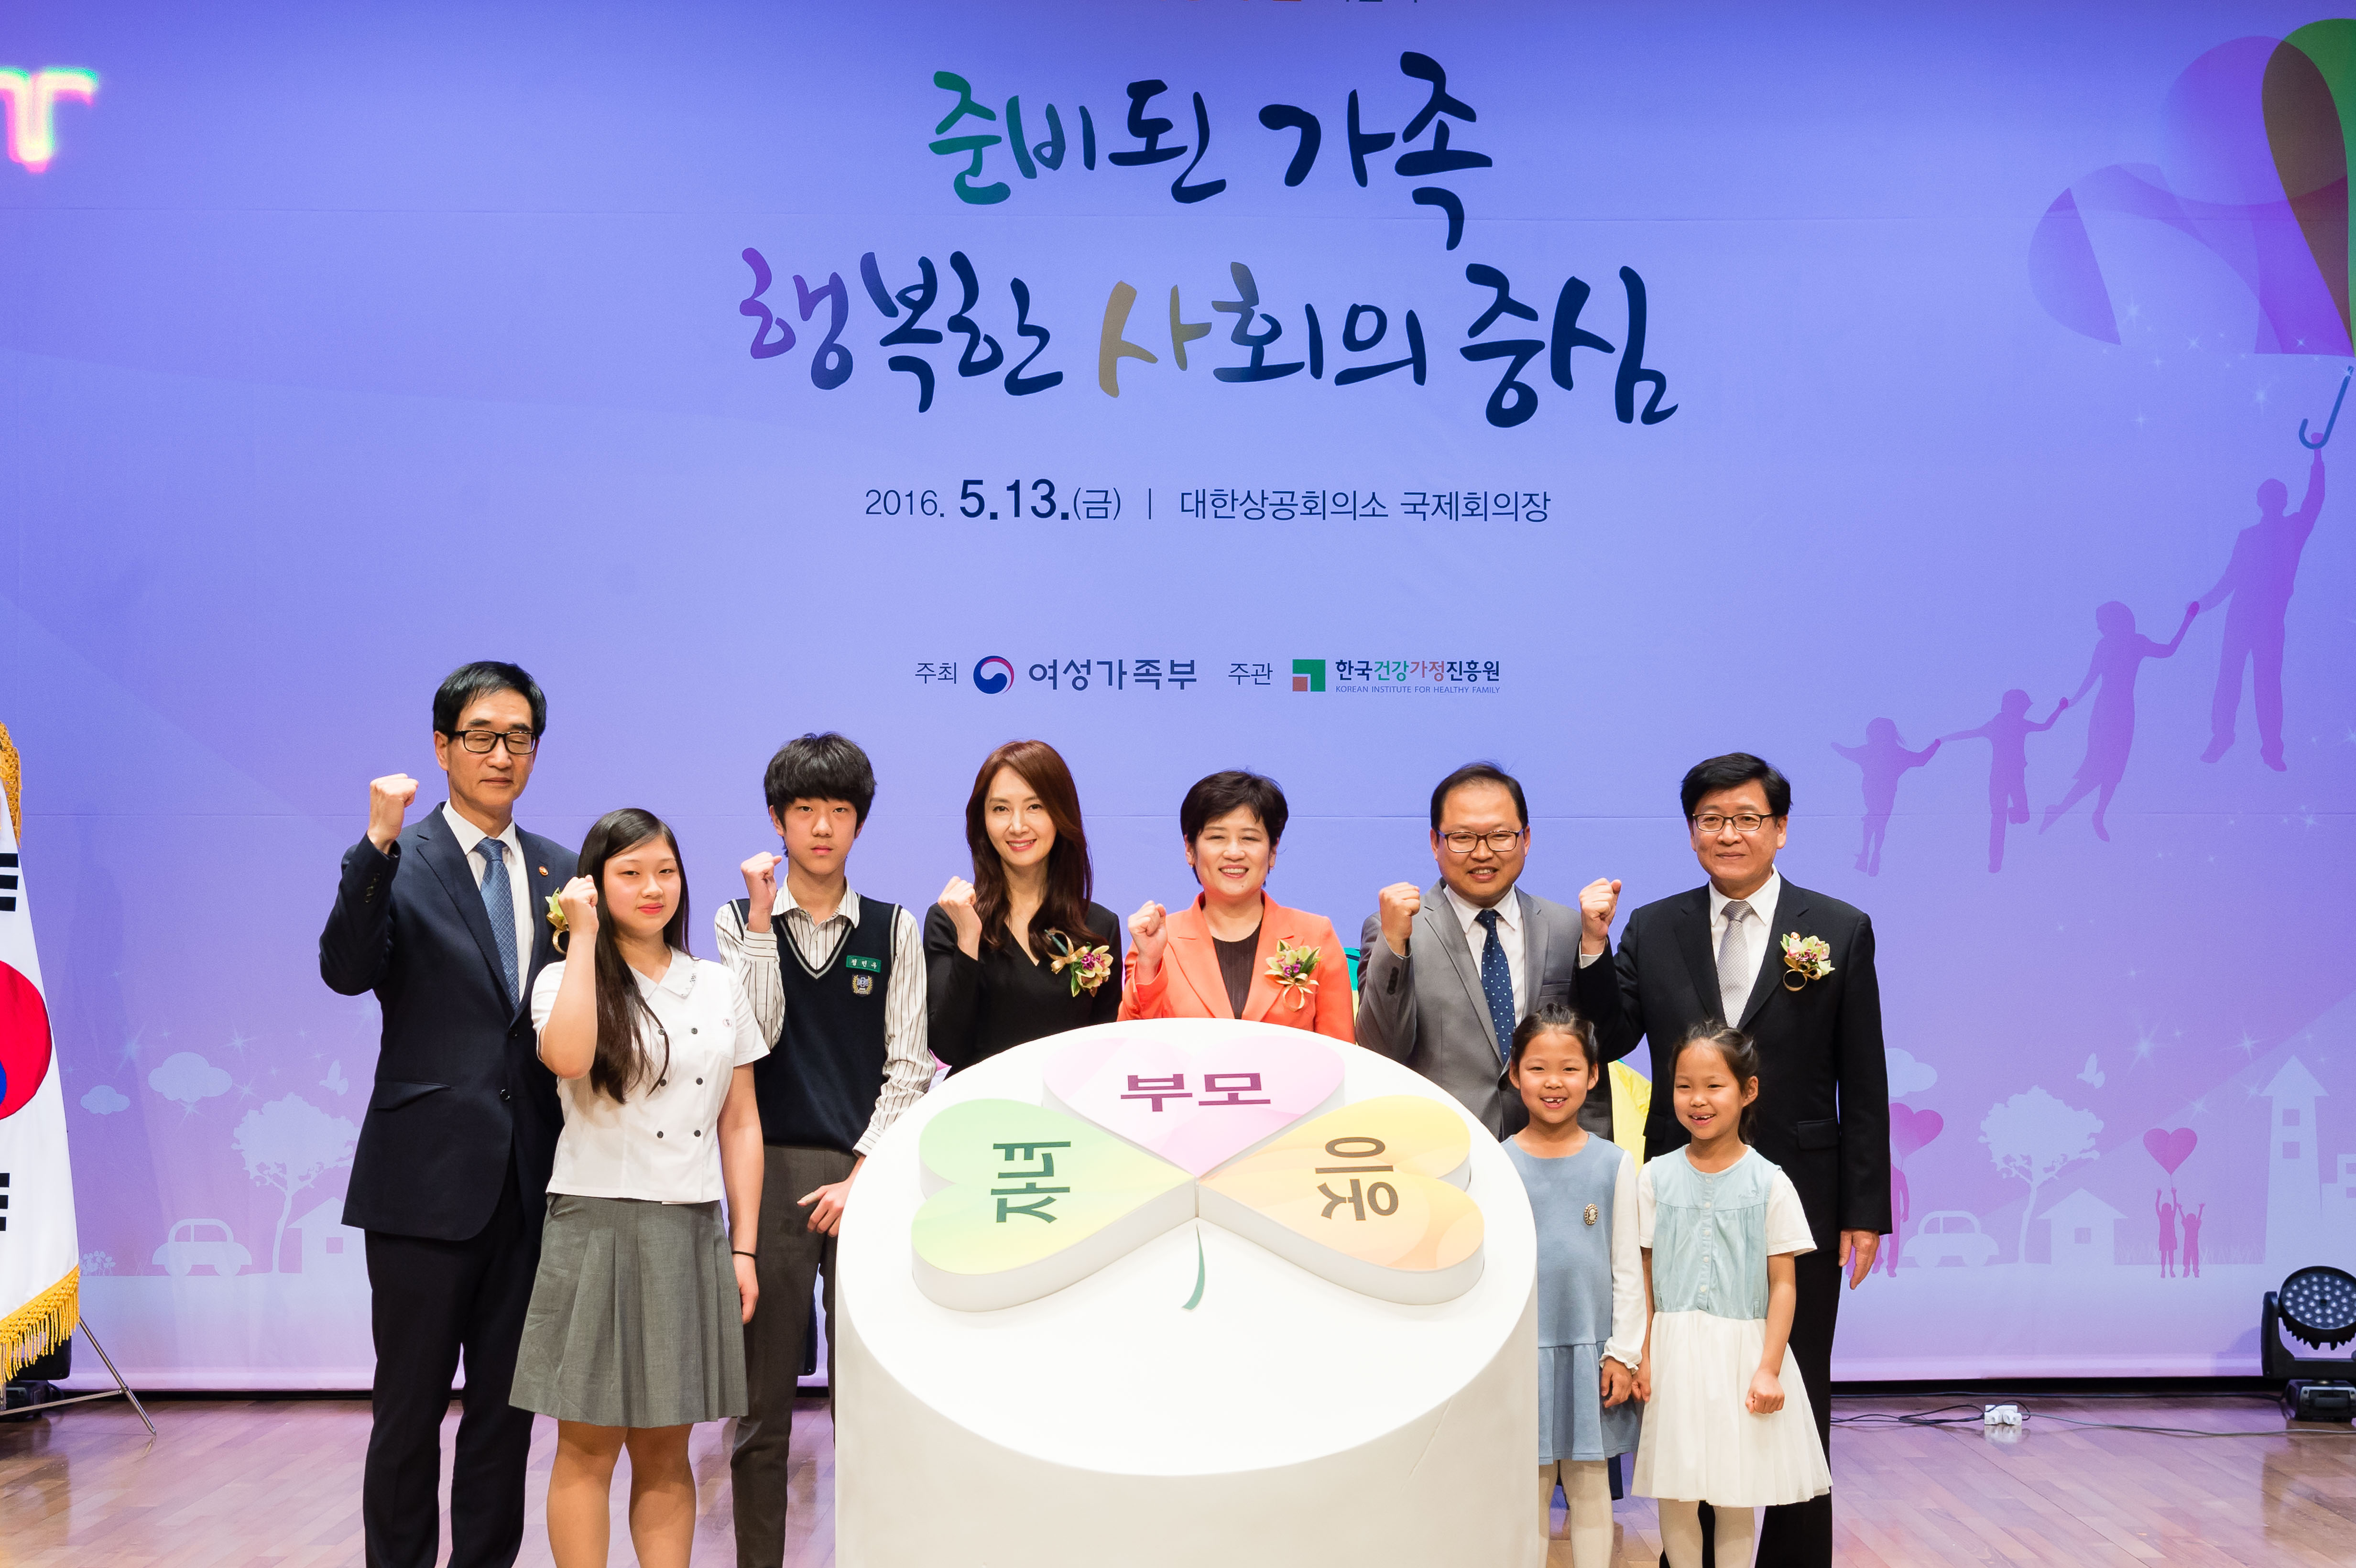 2016년 가정의달 기념식 개최